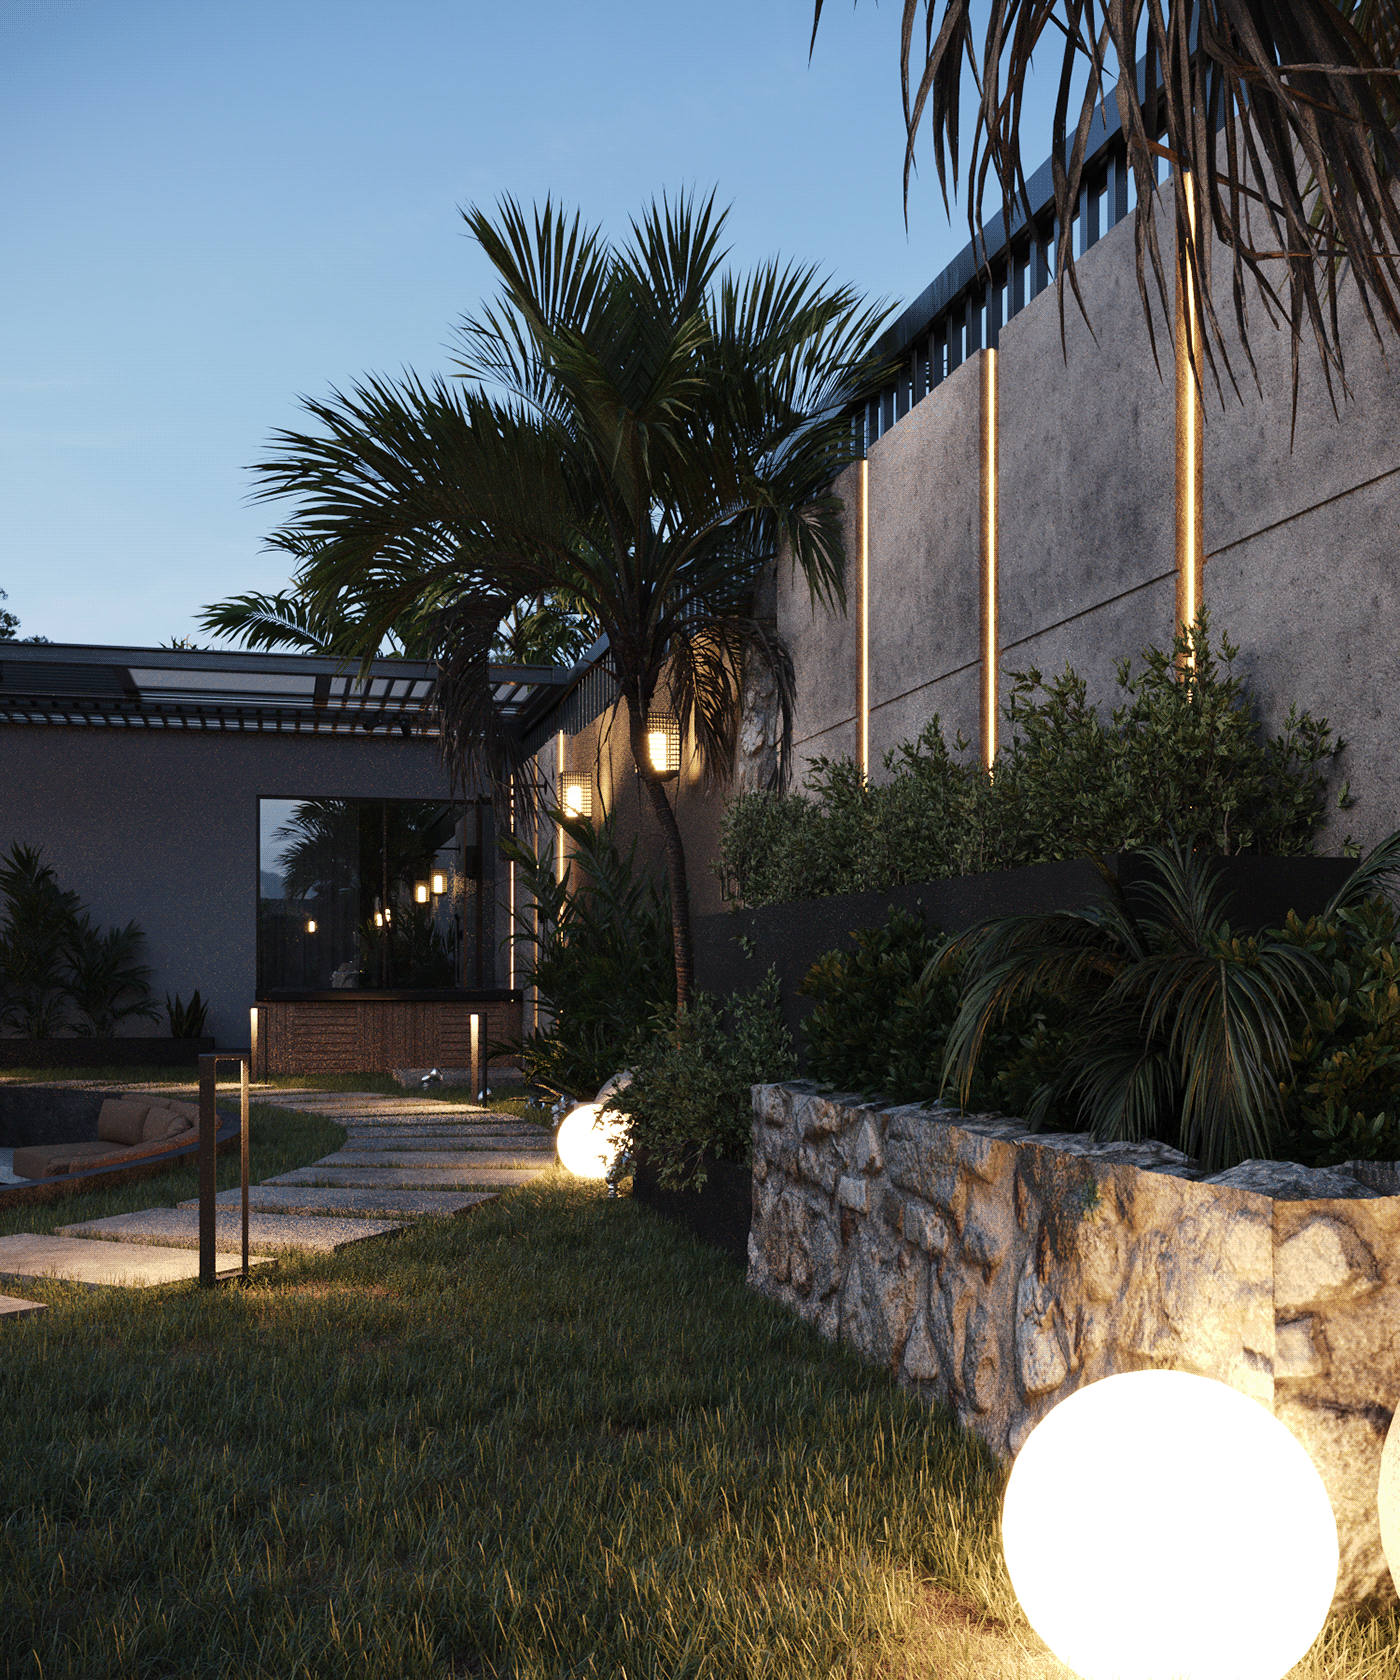 Outdoor Landscape architecture visualization archviz Render 3D 3ds max corona exterior